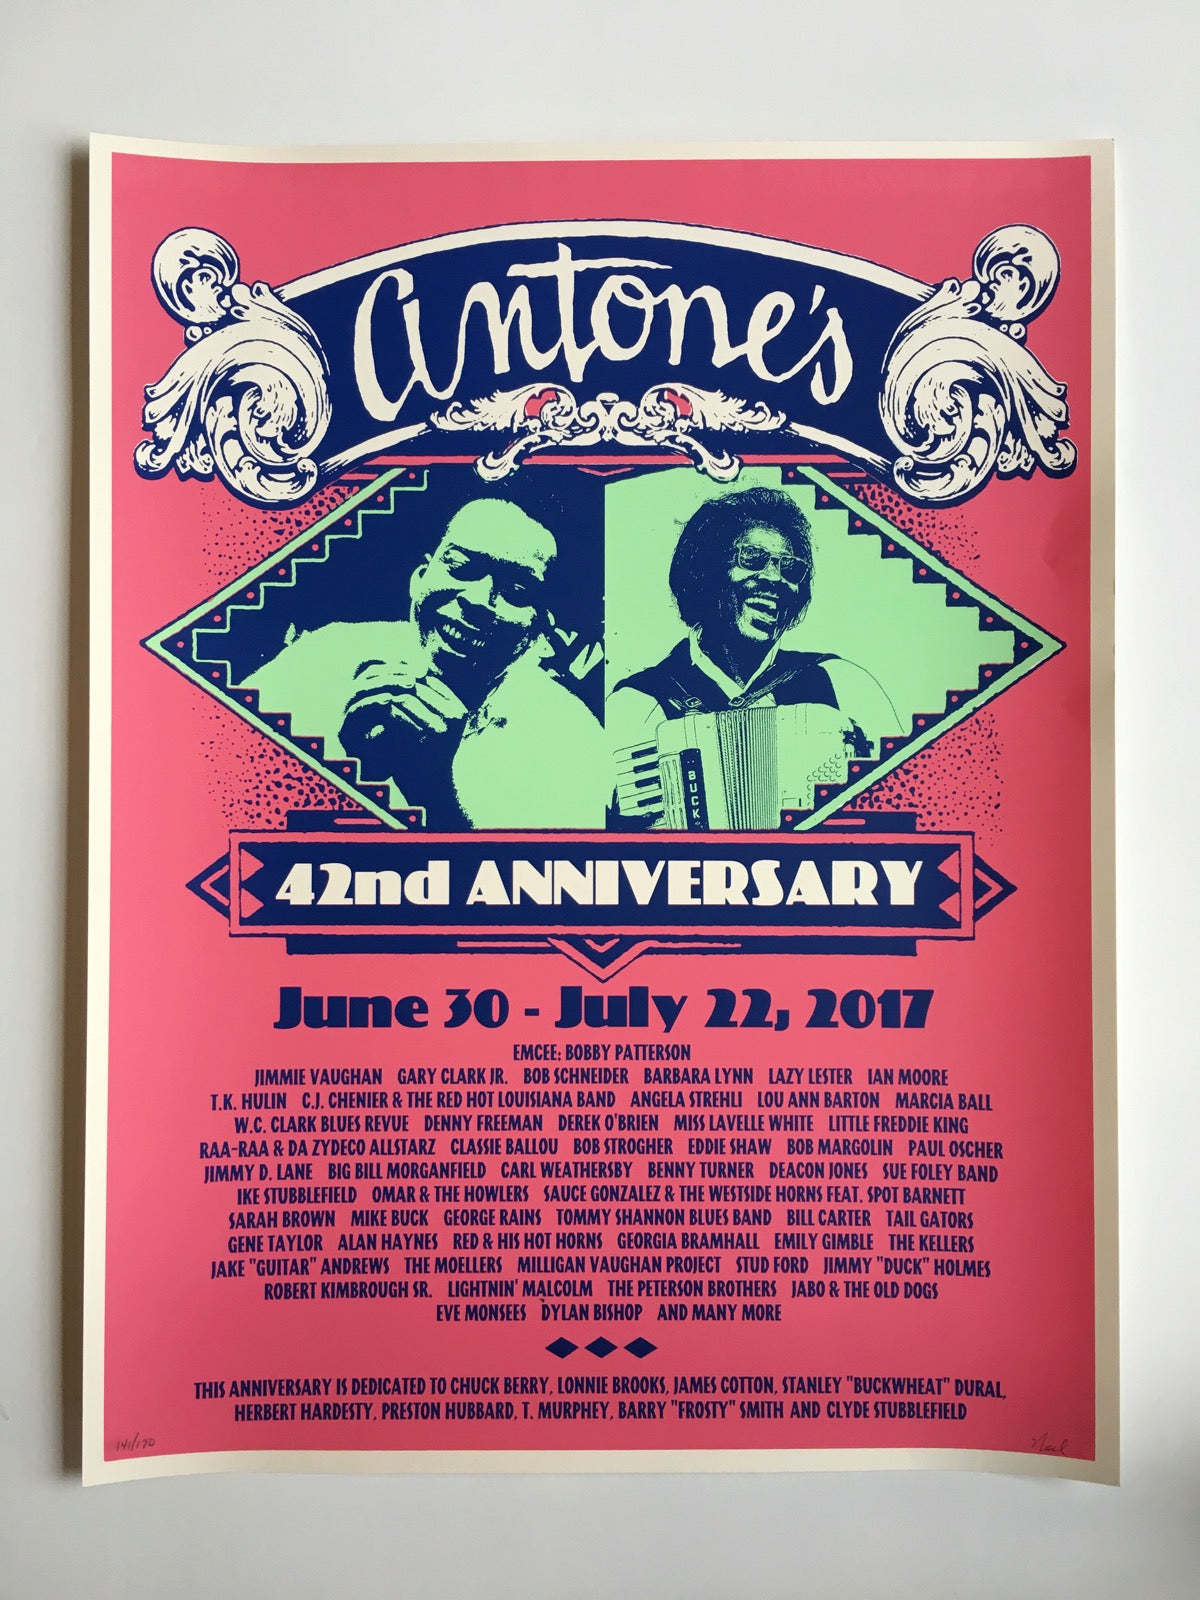 Antone's 42nd Anniversary Poster